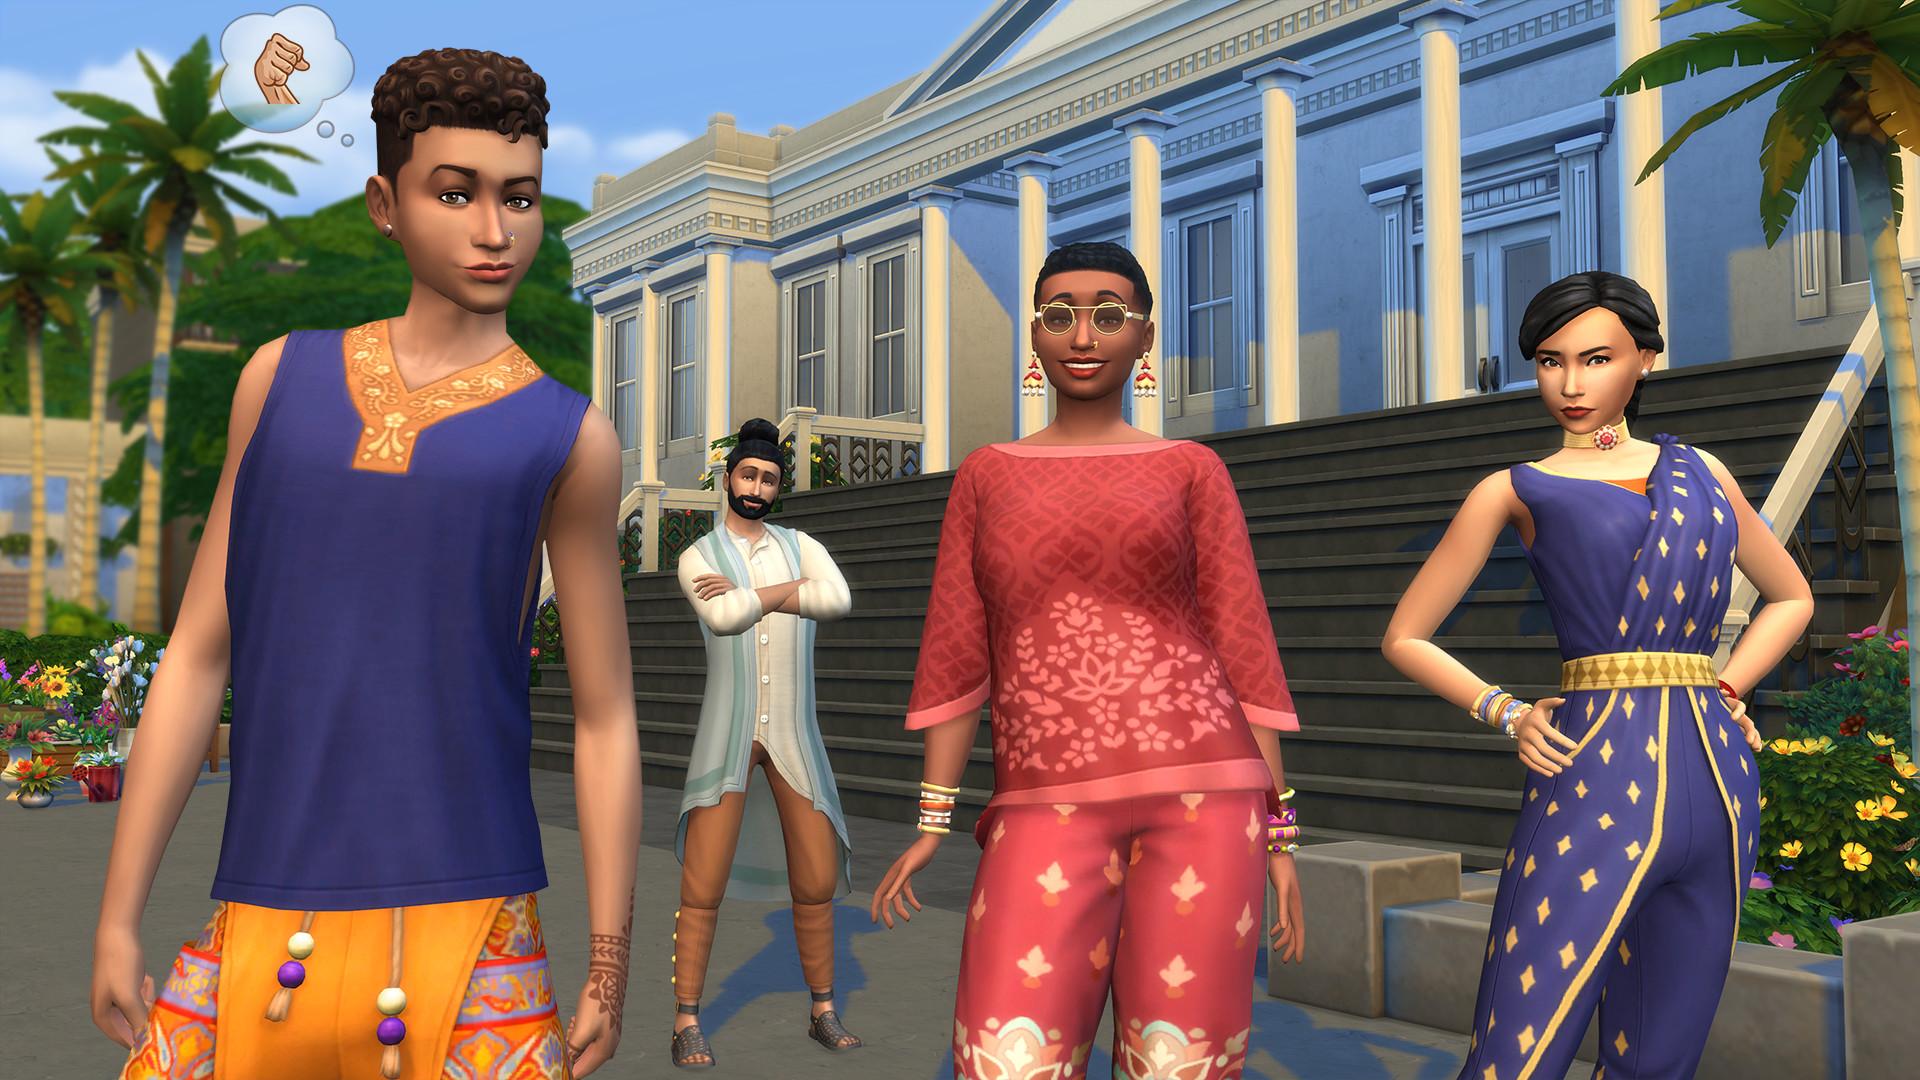 Obrázok z balíčka The Sims 4 Daring Lifestyle.